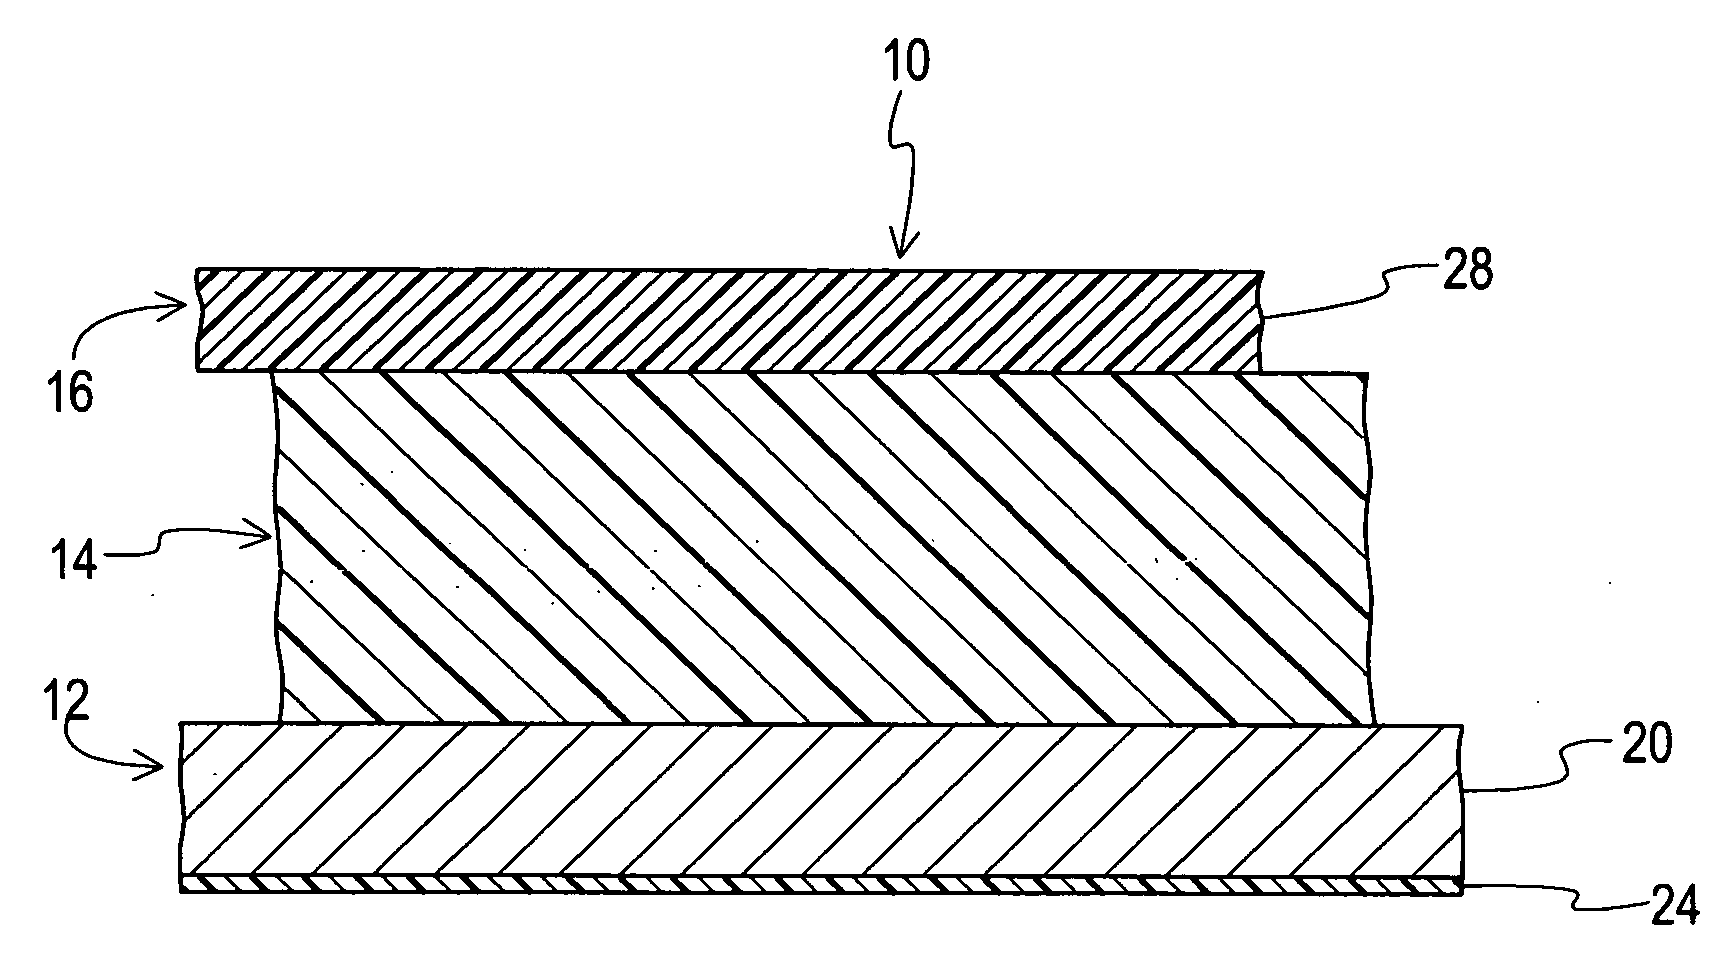 Planar sheet vapor barrier